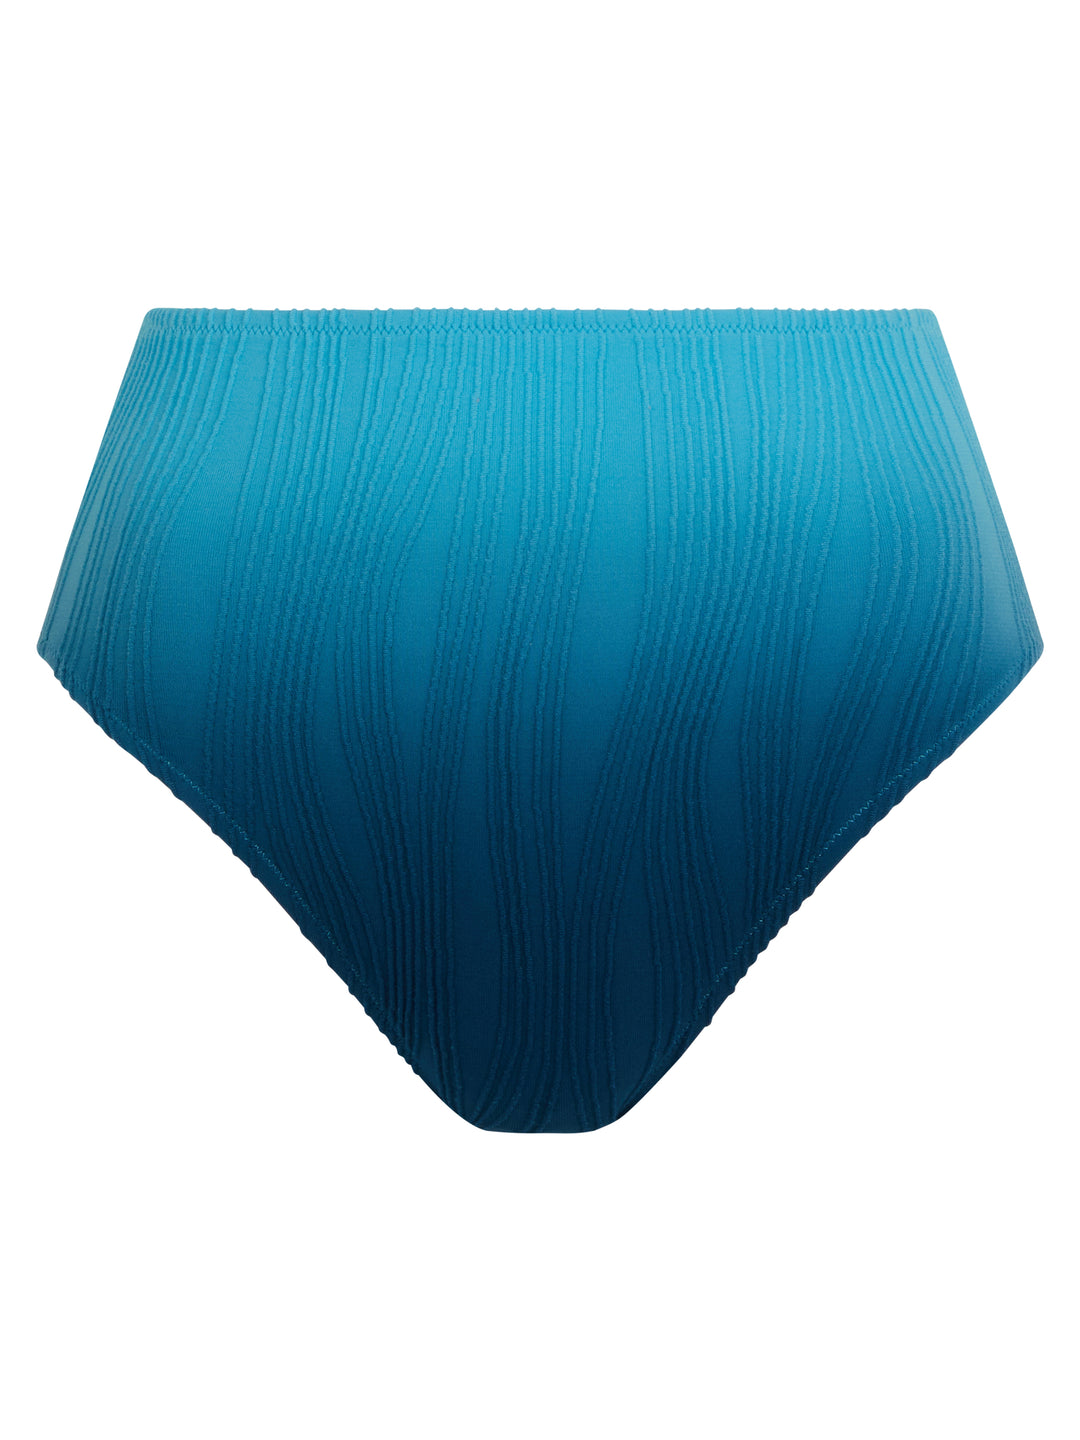 Chantelle Swimwear - Swim One Size Full Brief Blue tie & dye